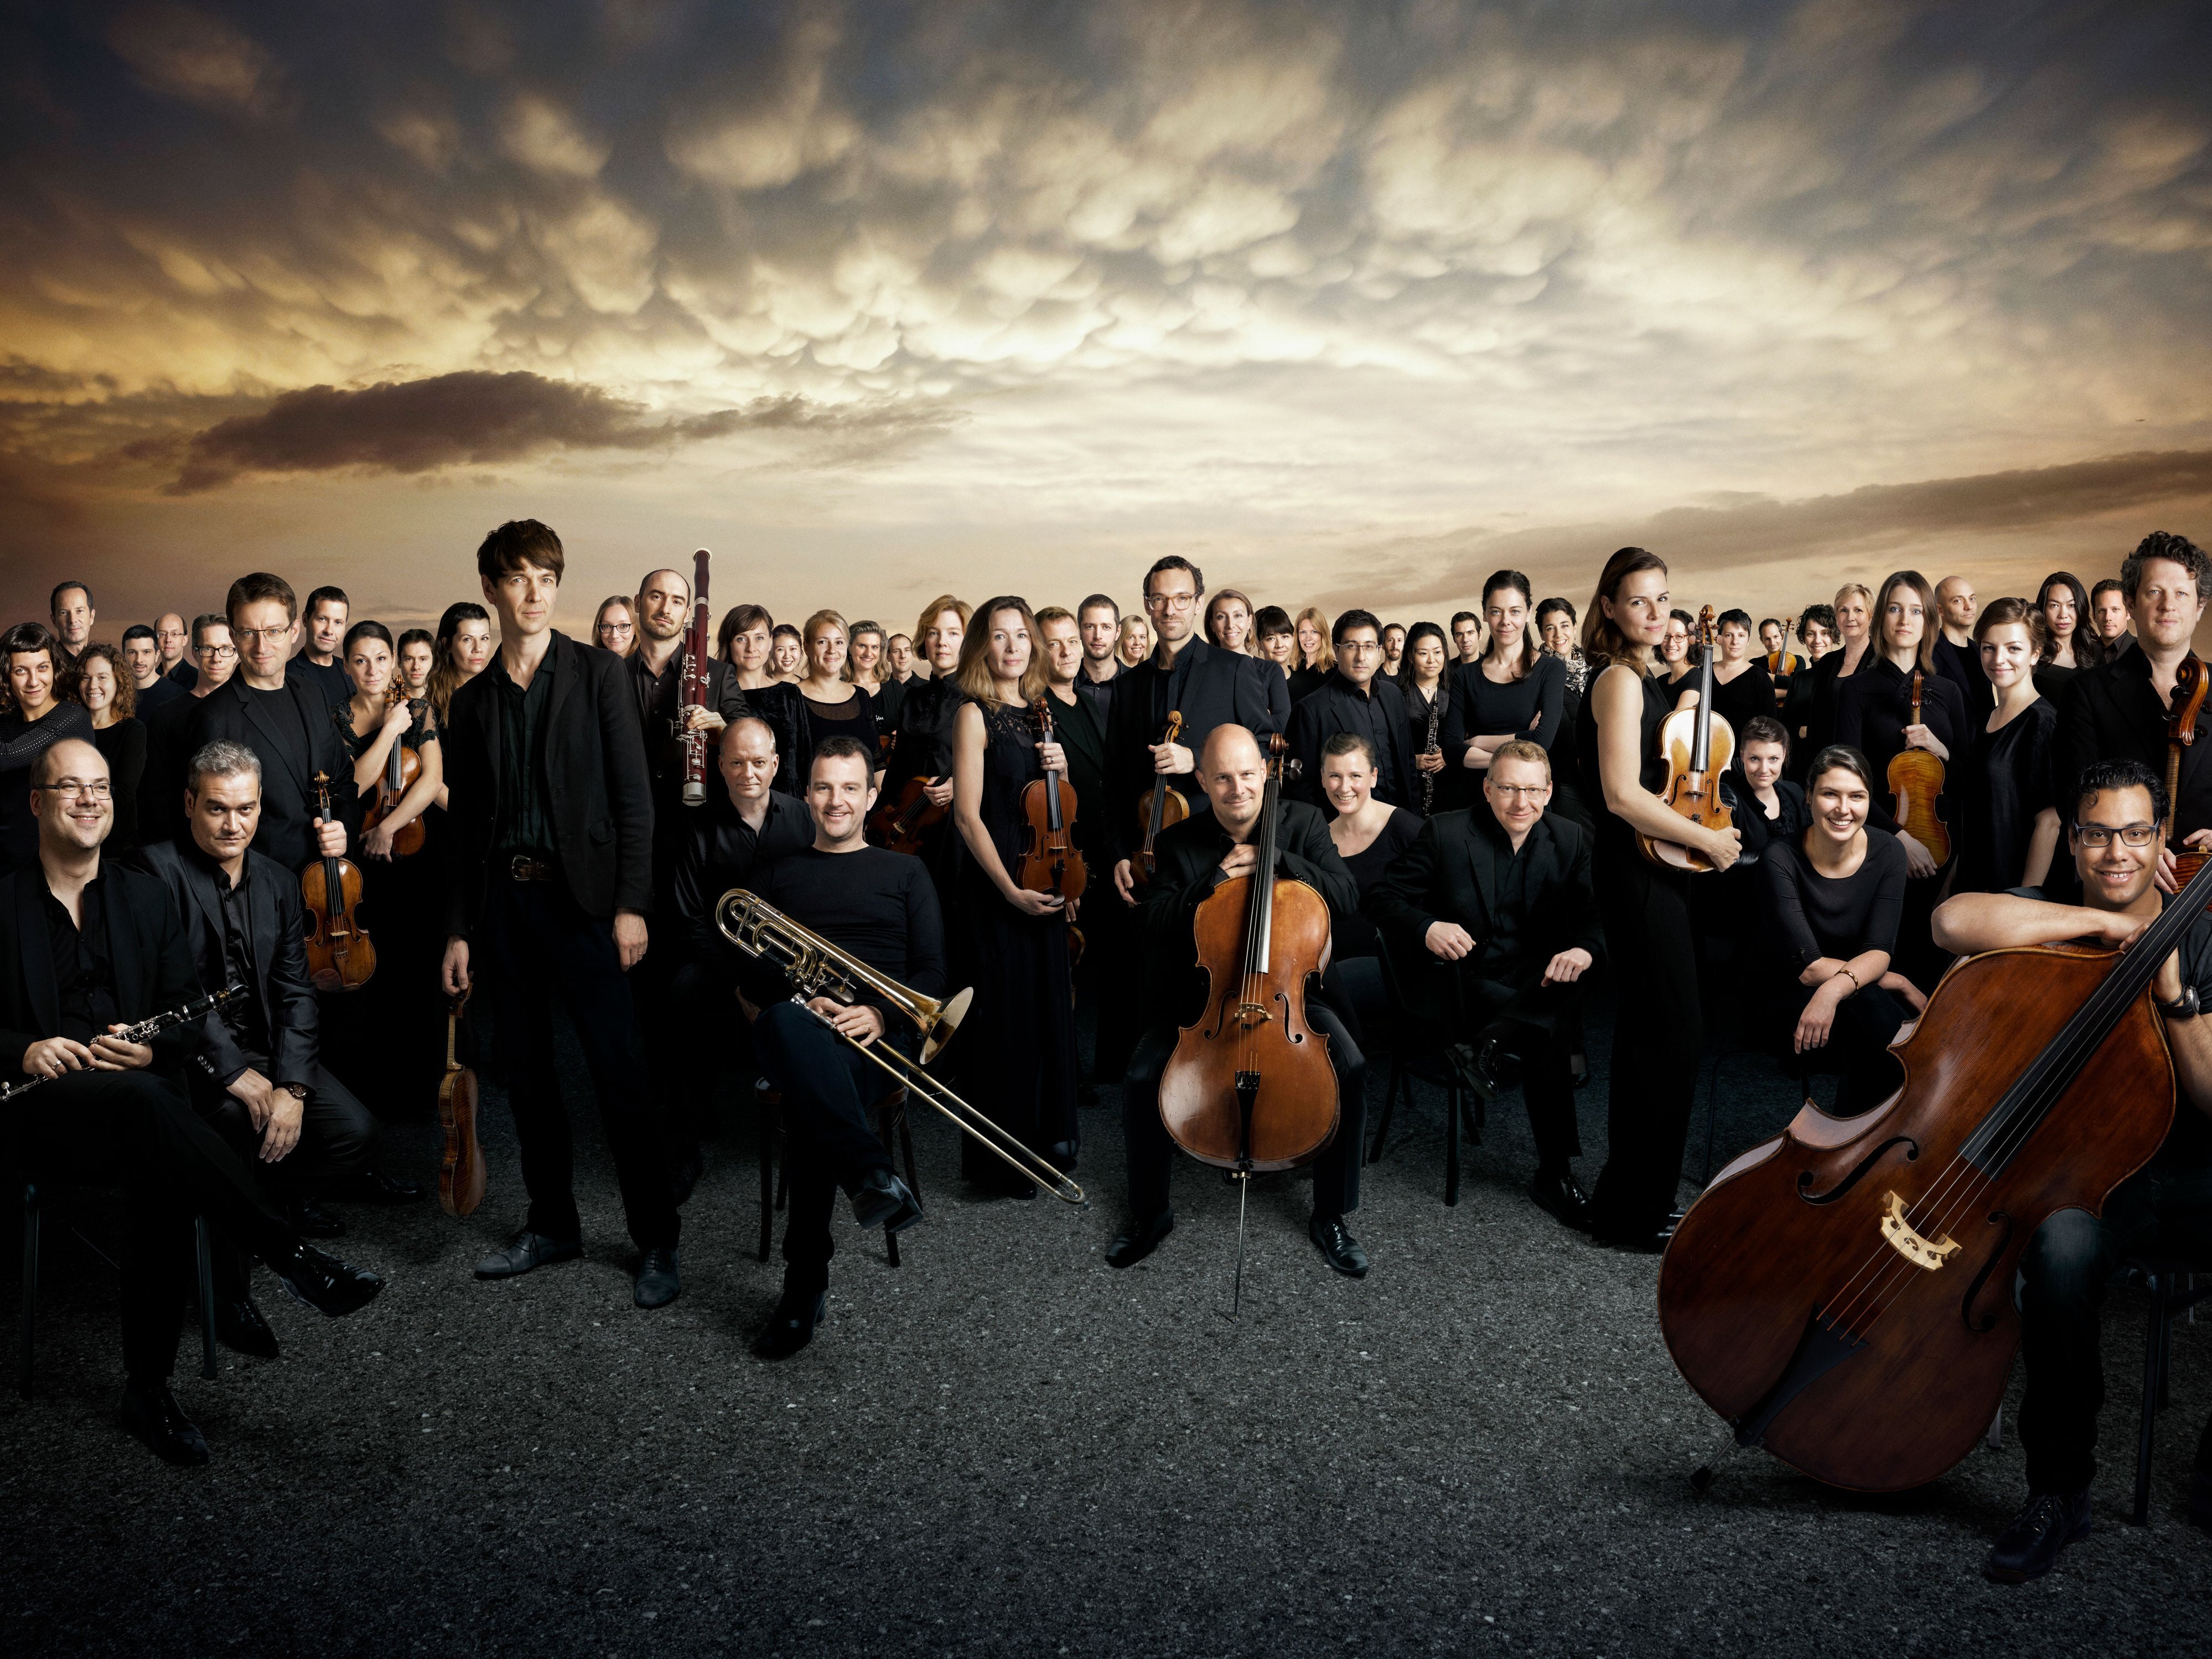 Gruppenbild des Orchesters vor dramatischem Himmel